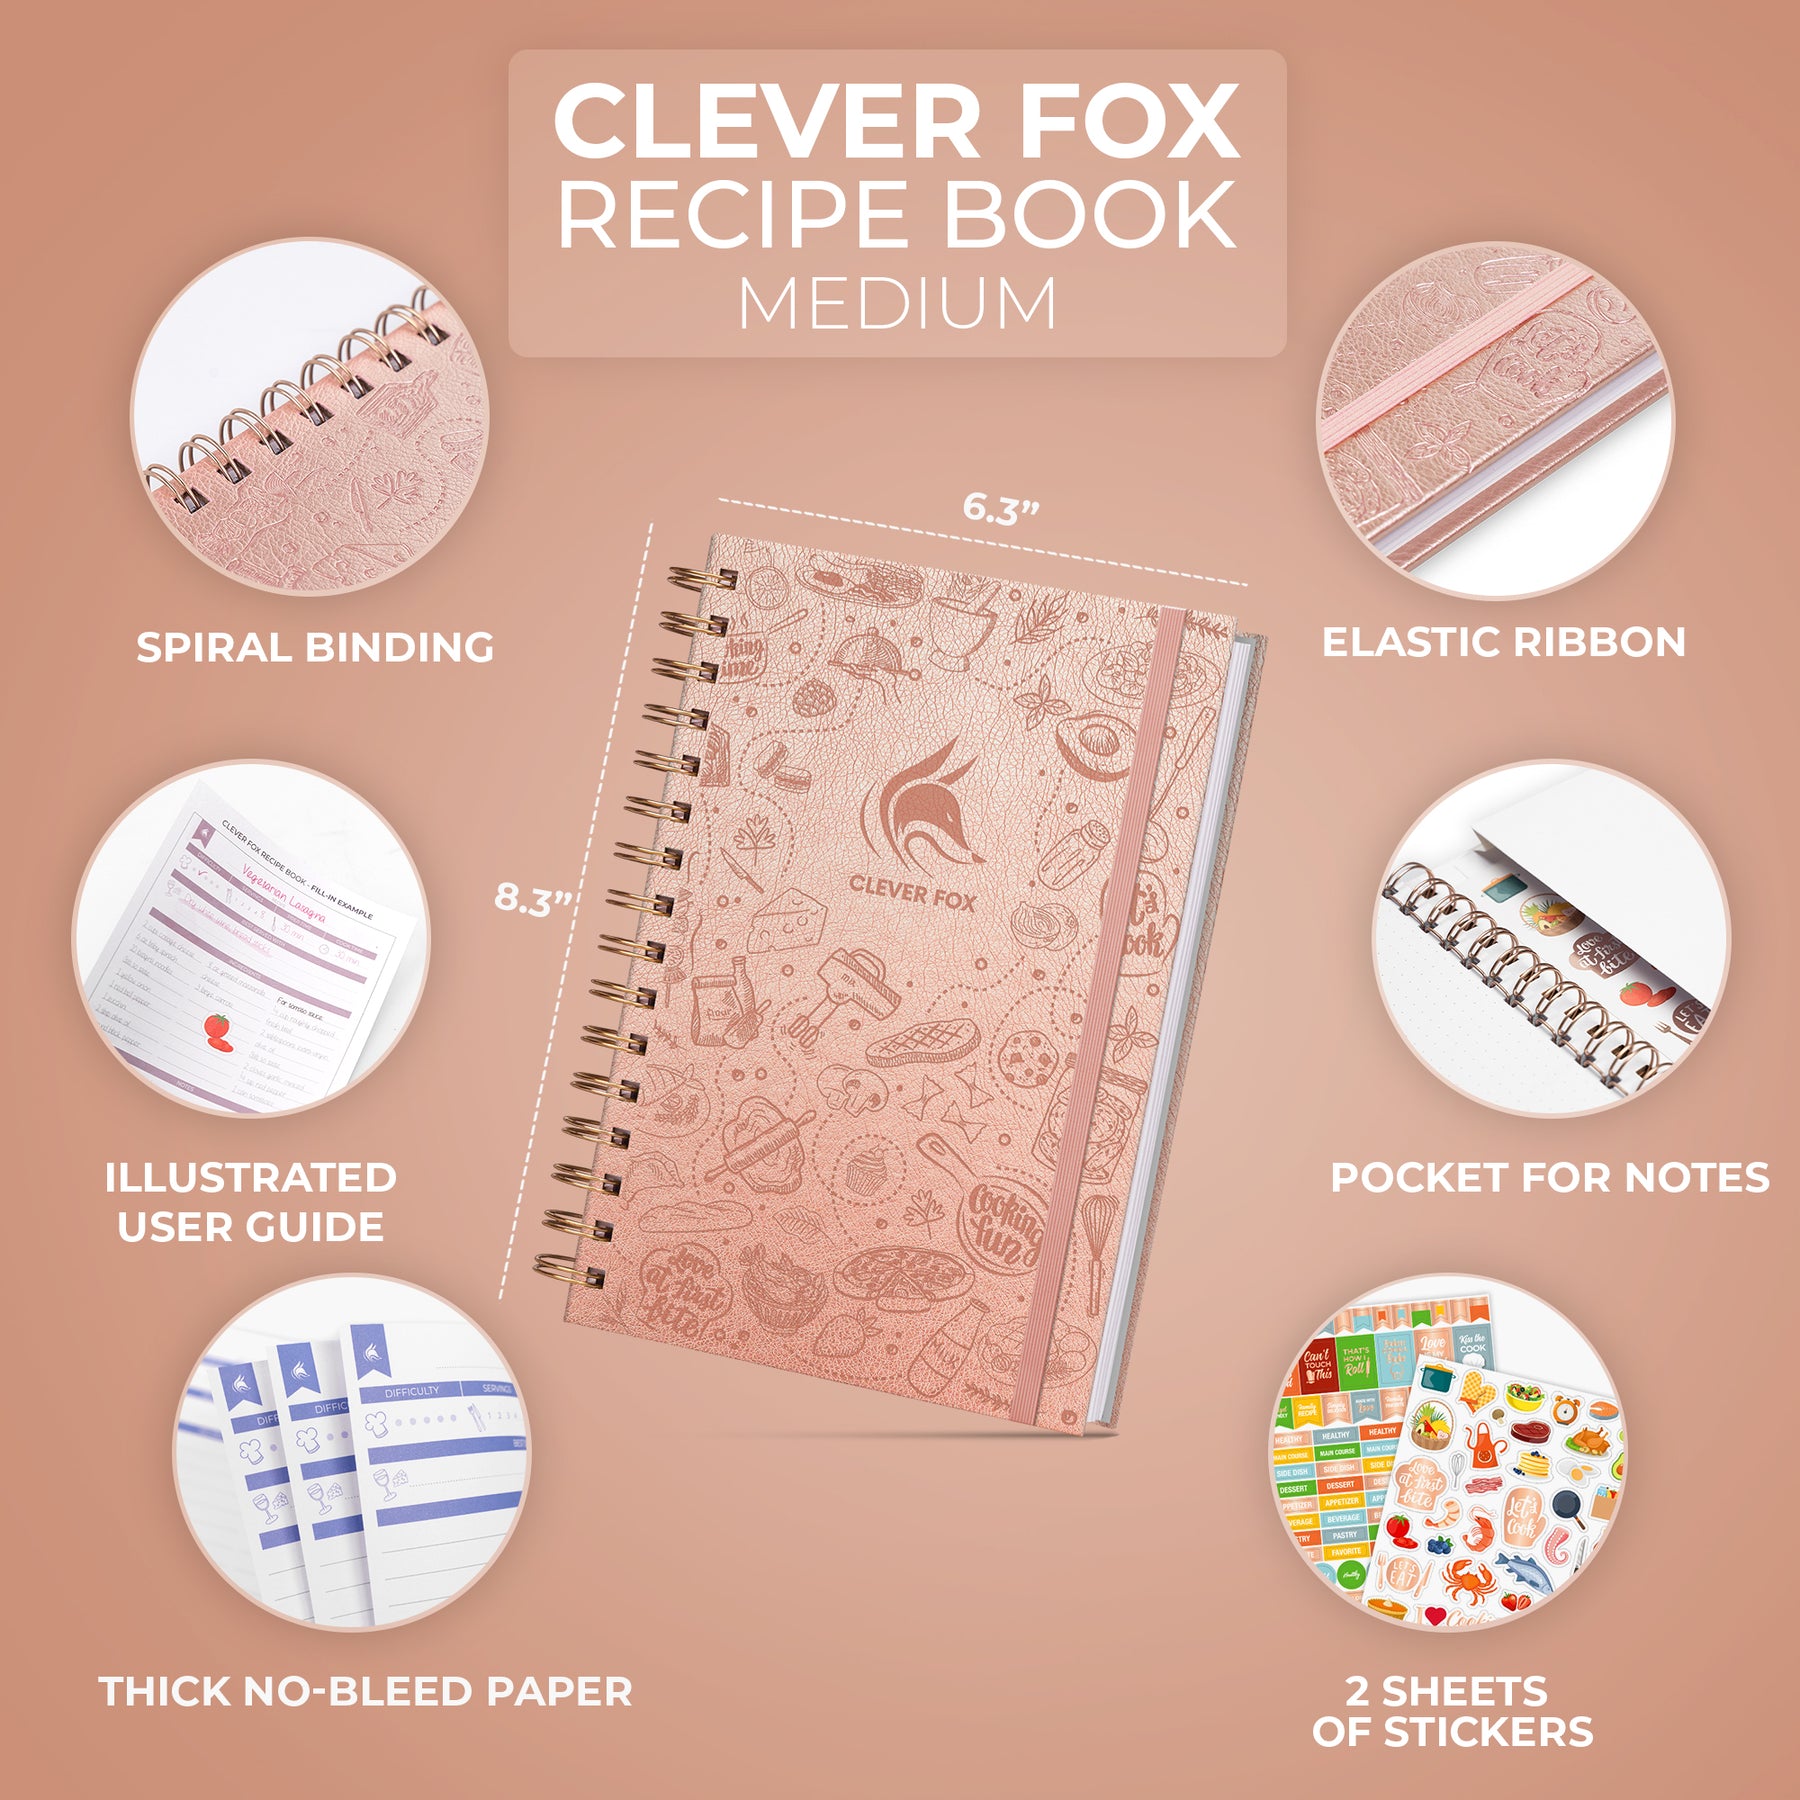 Recipe Book – Clever Fox®